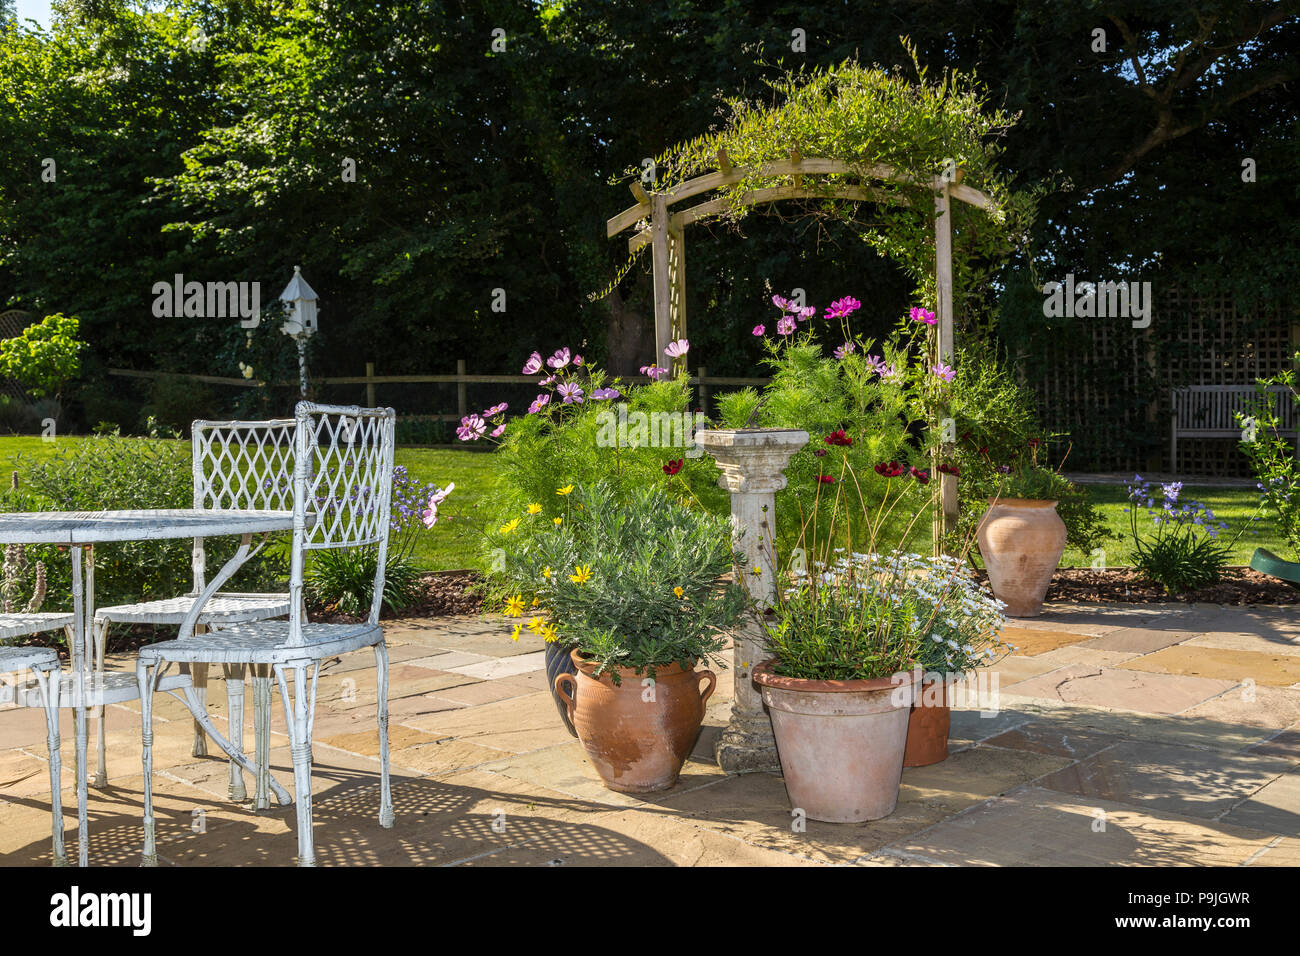 Scène de jardin avec table, chaises, pots de cosmos,cosmos chocolat,marguerites,  et une arche Couverte de jasmin Photo Stock - Alamy